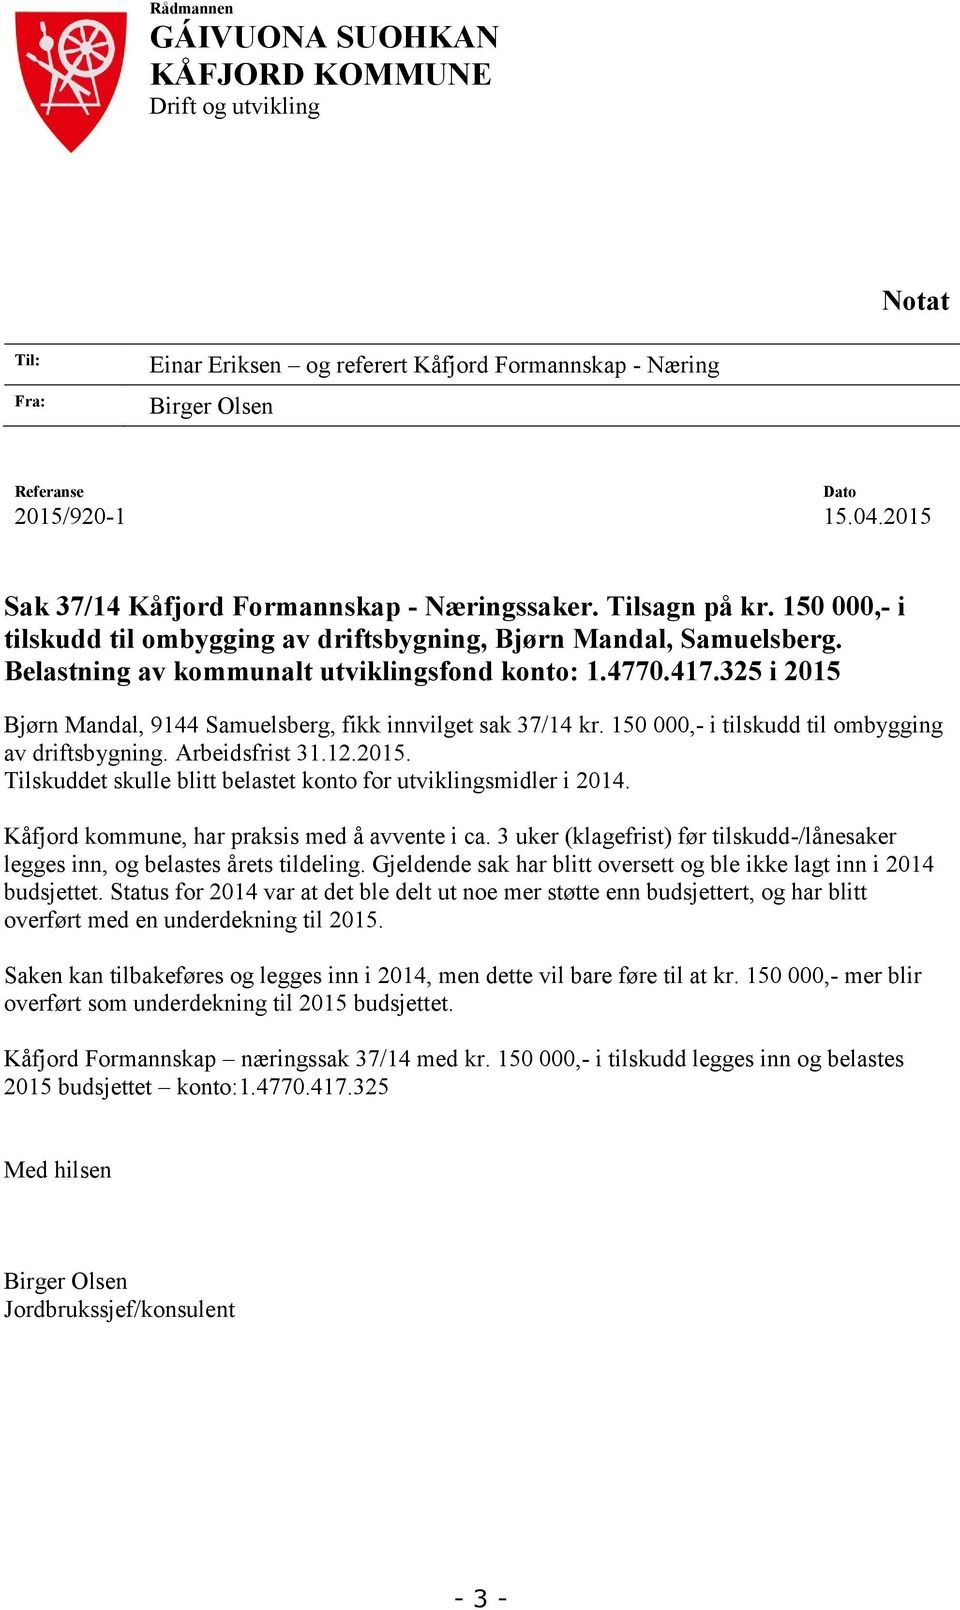 Samuelsberg fikk innvilget sak 3714 kr 150 000- i tilskudd til ombygging av driftsbygning Arbeidsfrist 31122015 Tilskuddet skulle blitt belastet konto for utviklingsmidler i 2014 Kåfjord kommune har